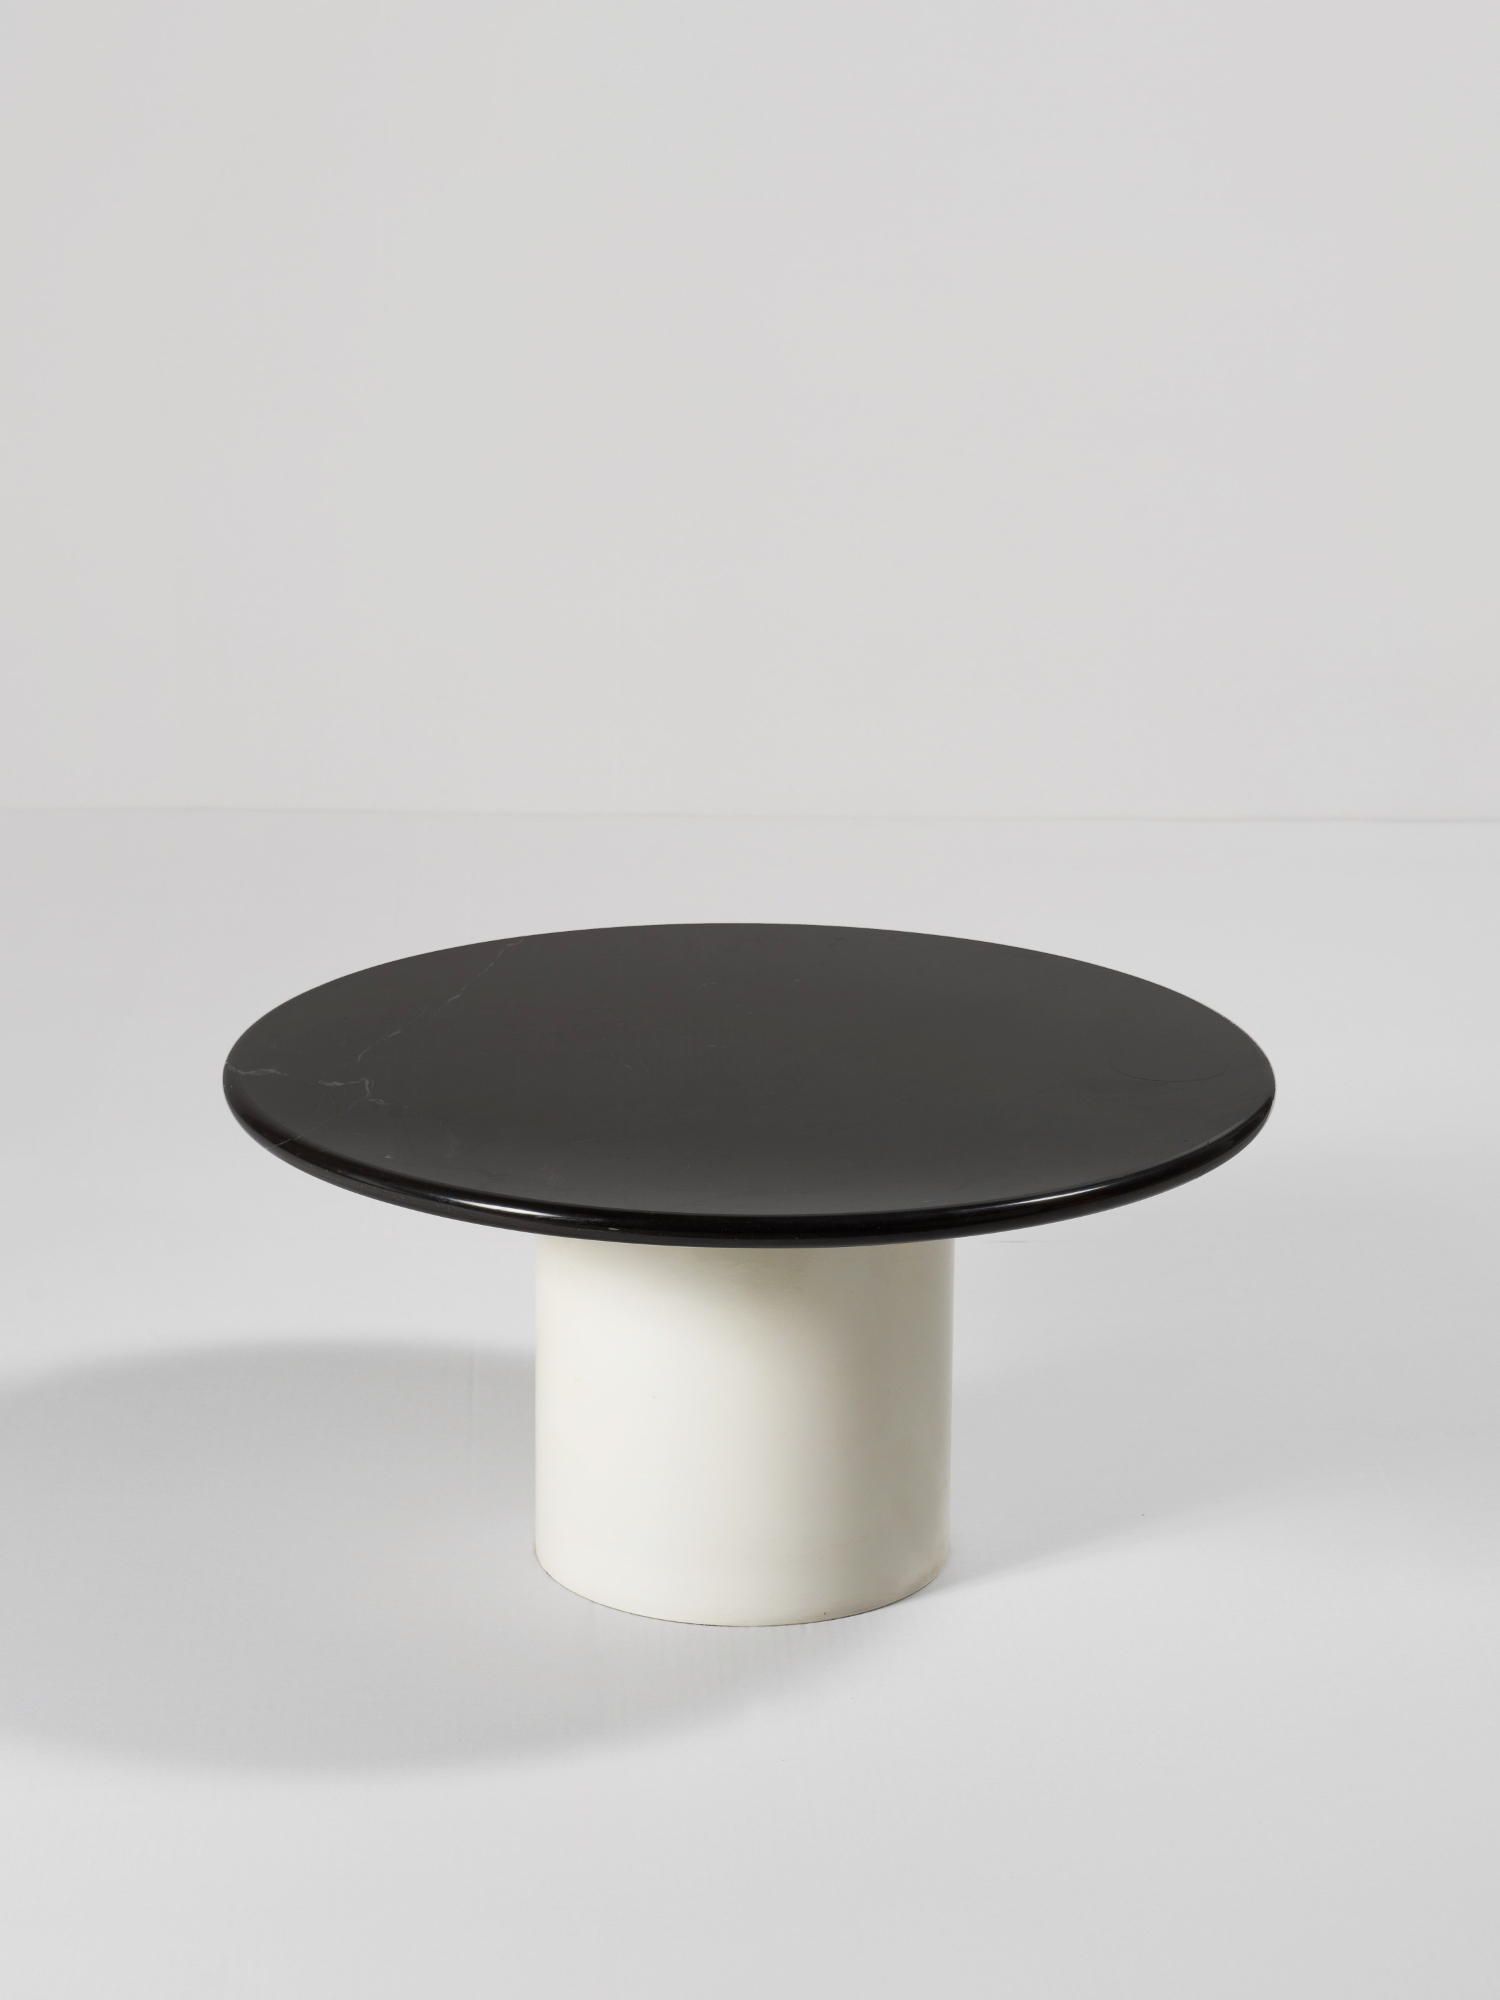 Table “Tavolino” – Prototype SOTTSASS Ettore